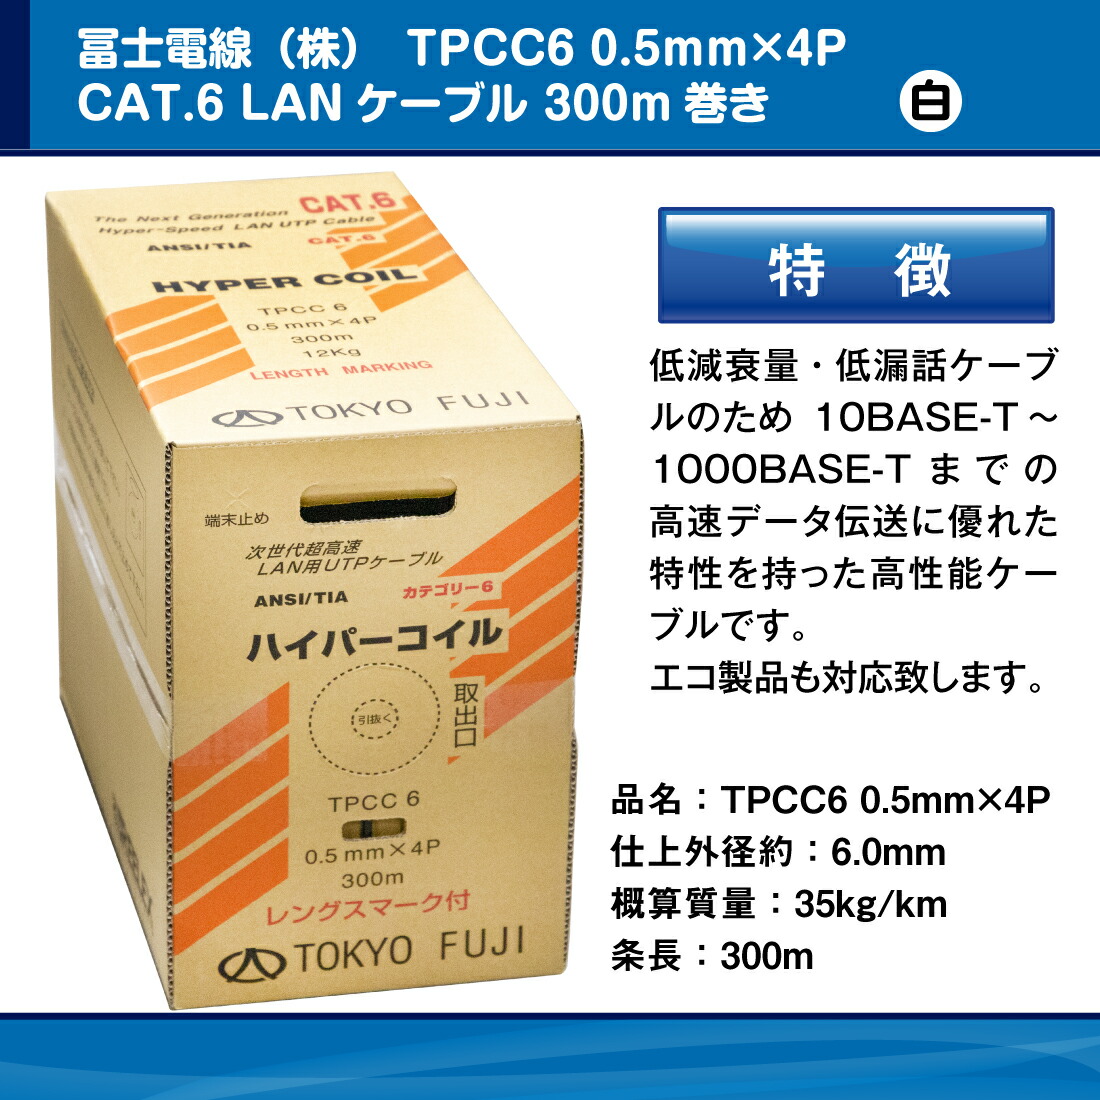 冨士電線 TPCC6 0.5mm×4P レングスマーク付 ハイパーコイル 白/ホワイト Cat.6 300m フジ